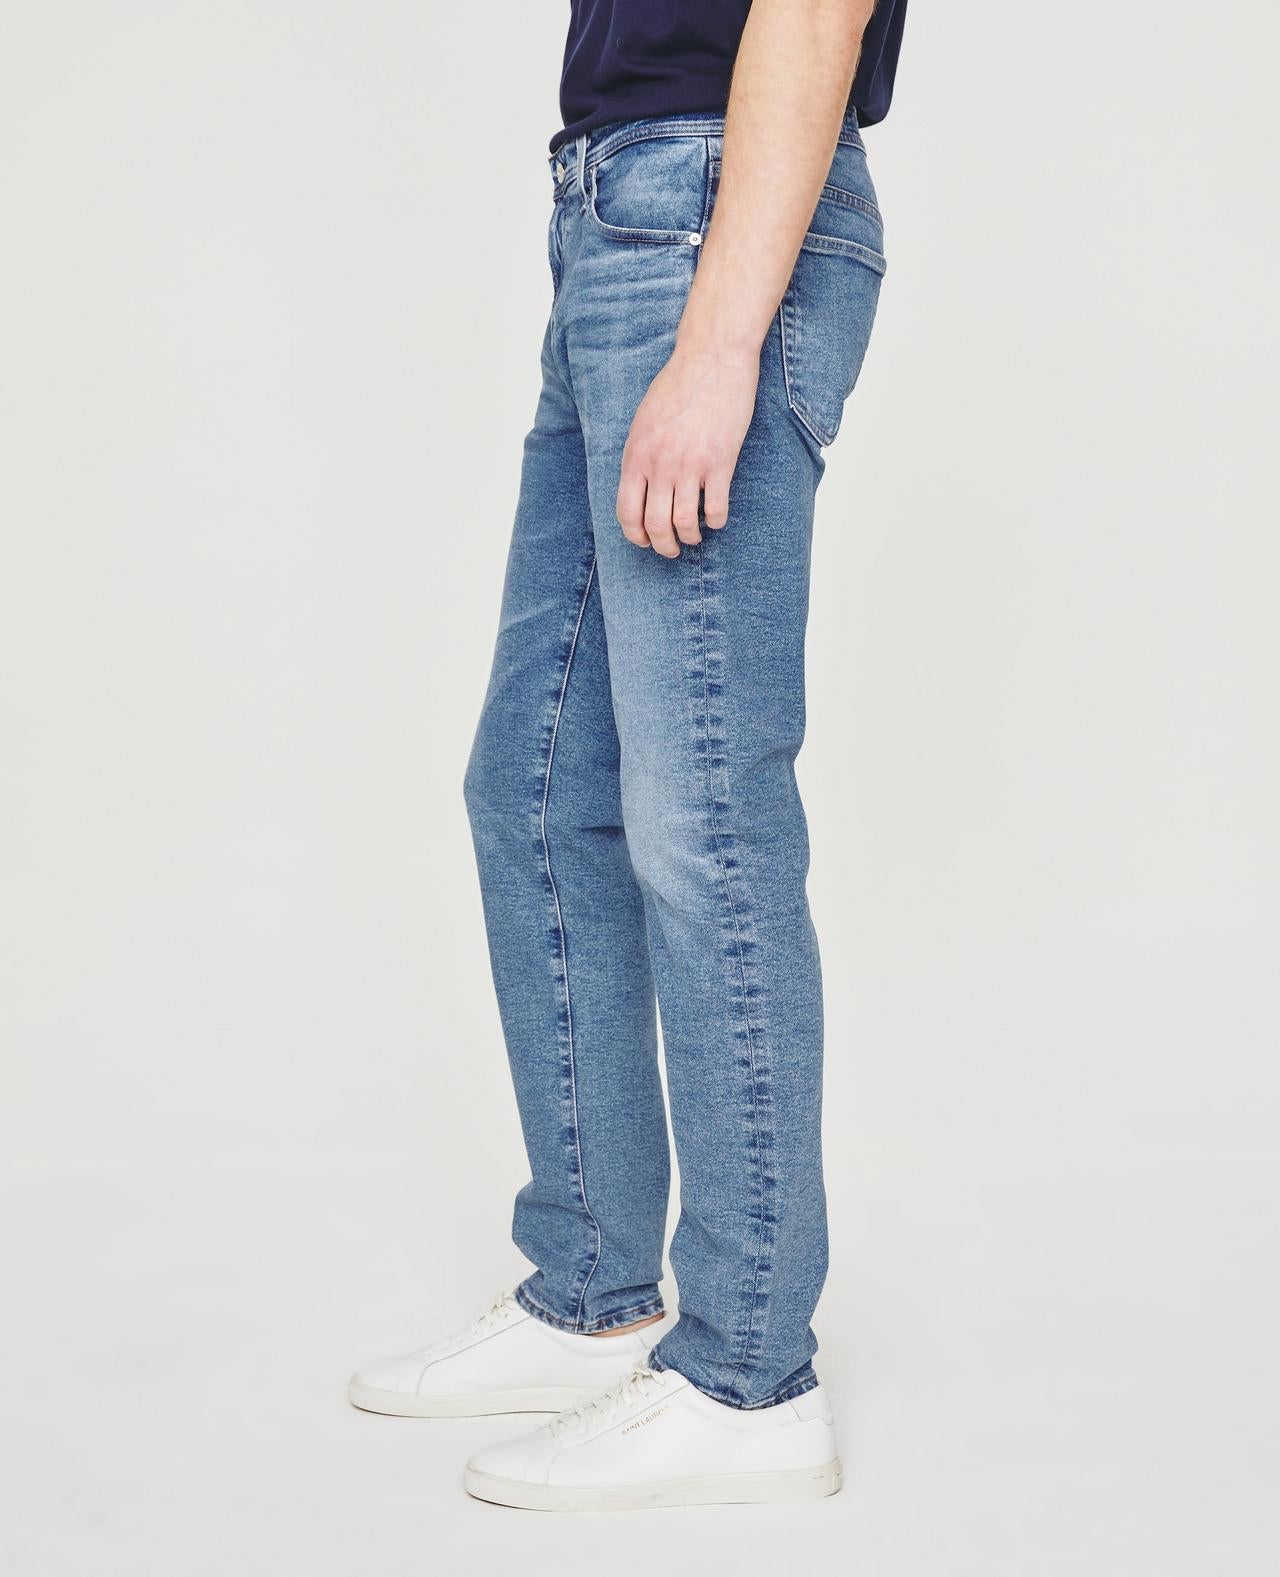 Tellis Modern Slim Jean - AG Jeans - Danali - 1783CCS-LAPA-30